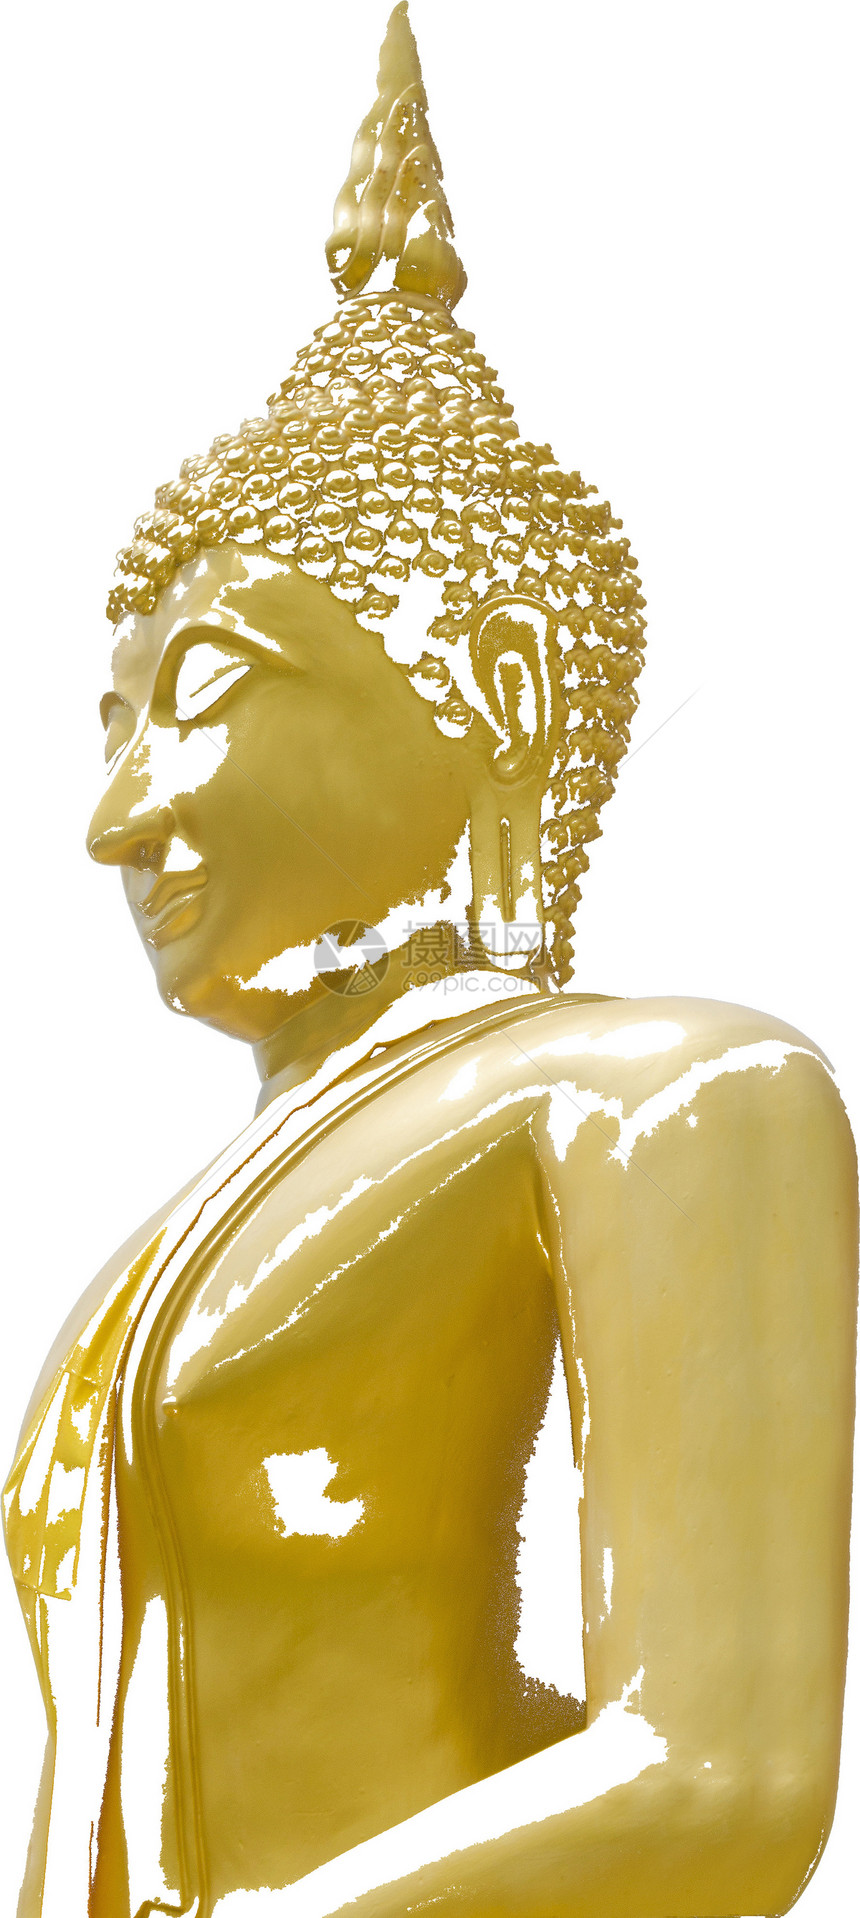 封印佛像祷告佛教徒雕塑雕像金子精神寺庙历史性旅游文化图片